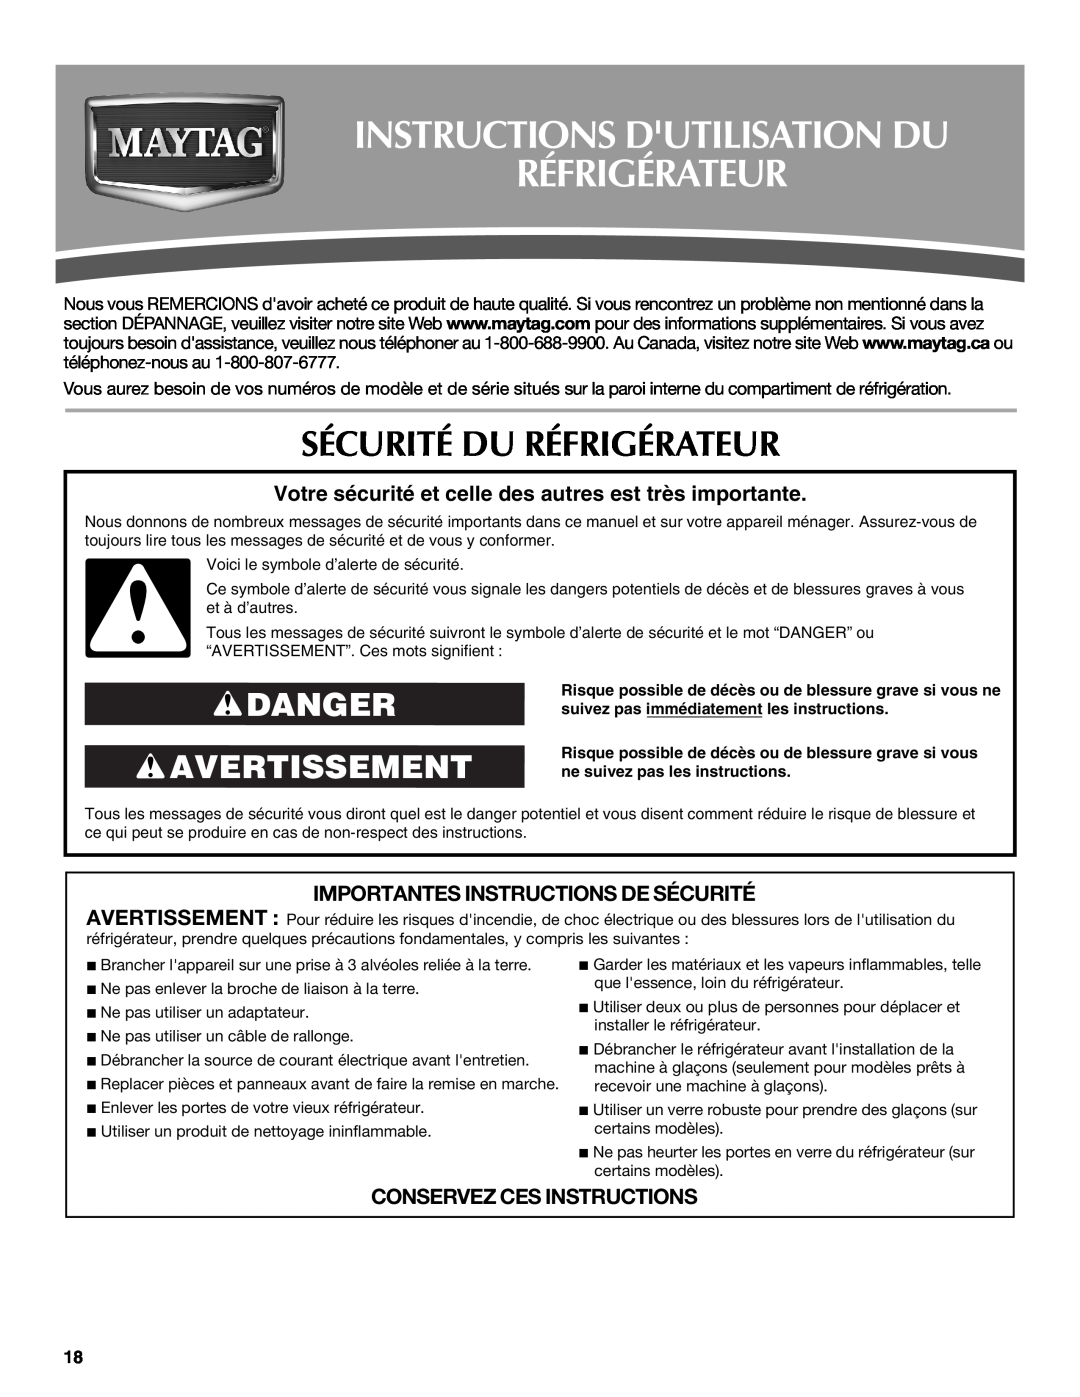 Maytag W10321476A Instructions Dutilisation Du Réfrigérateur, Sécurité Du Réfrigérateur, Danger Avertissement 